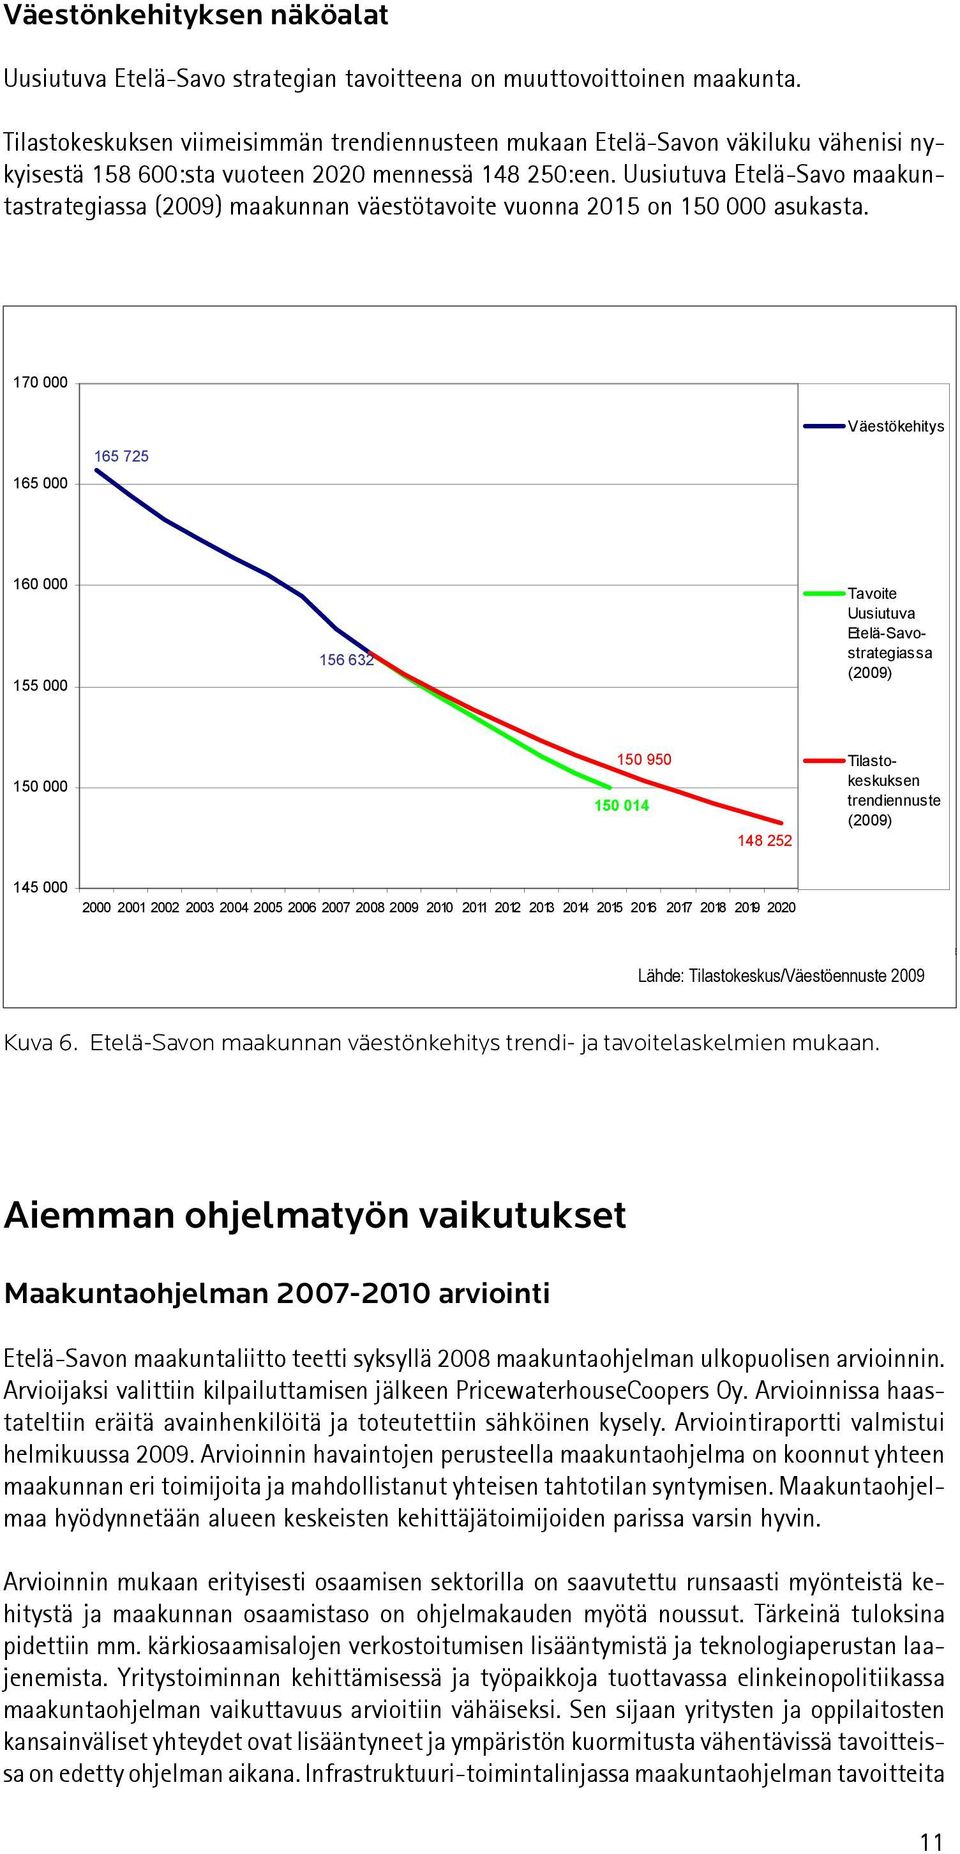 Uusiutuva Etelä-Savo maakuntastrategiassa (2009) maakunnan väestötavoite vuonna 2015 on 150 000 asukasta.